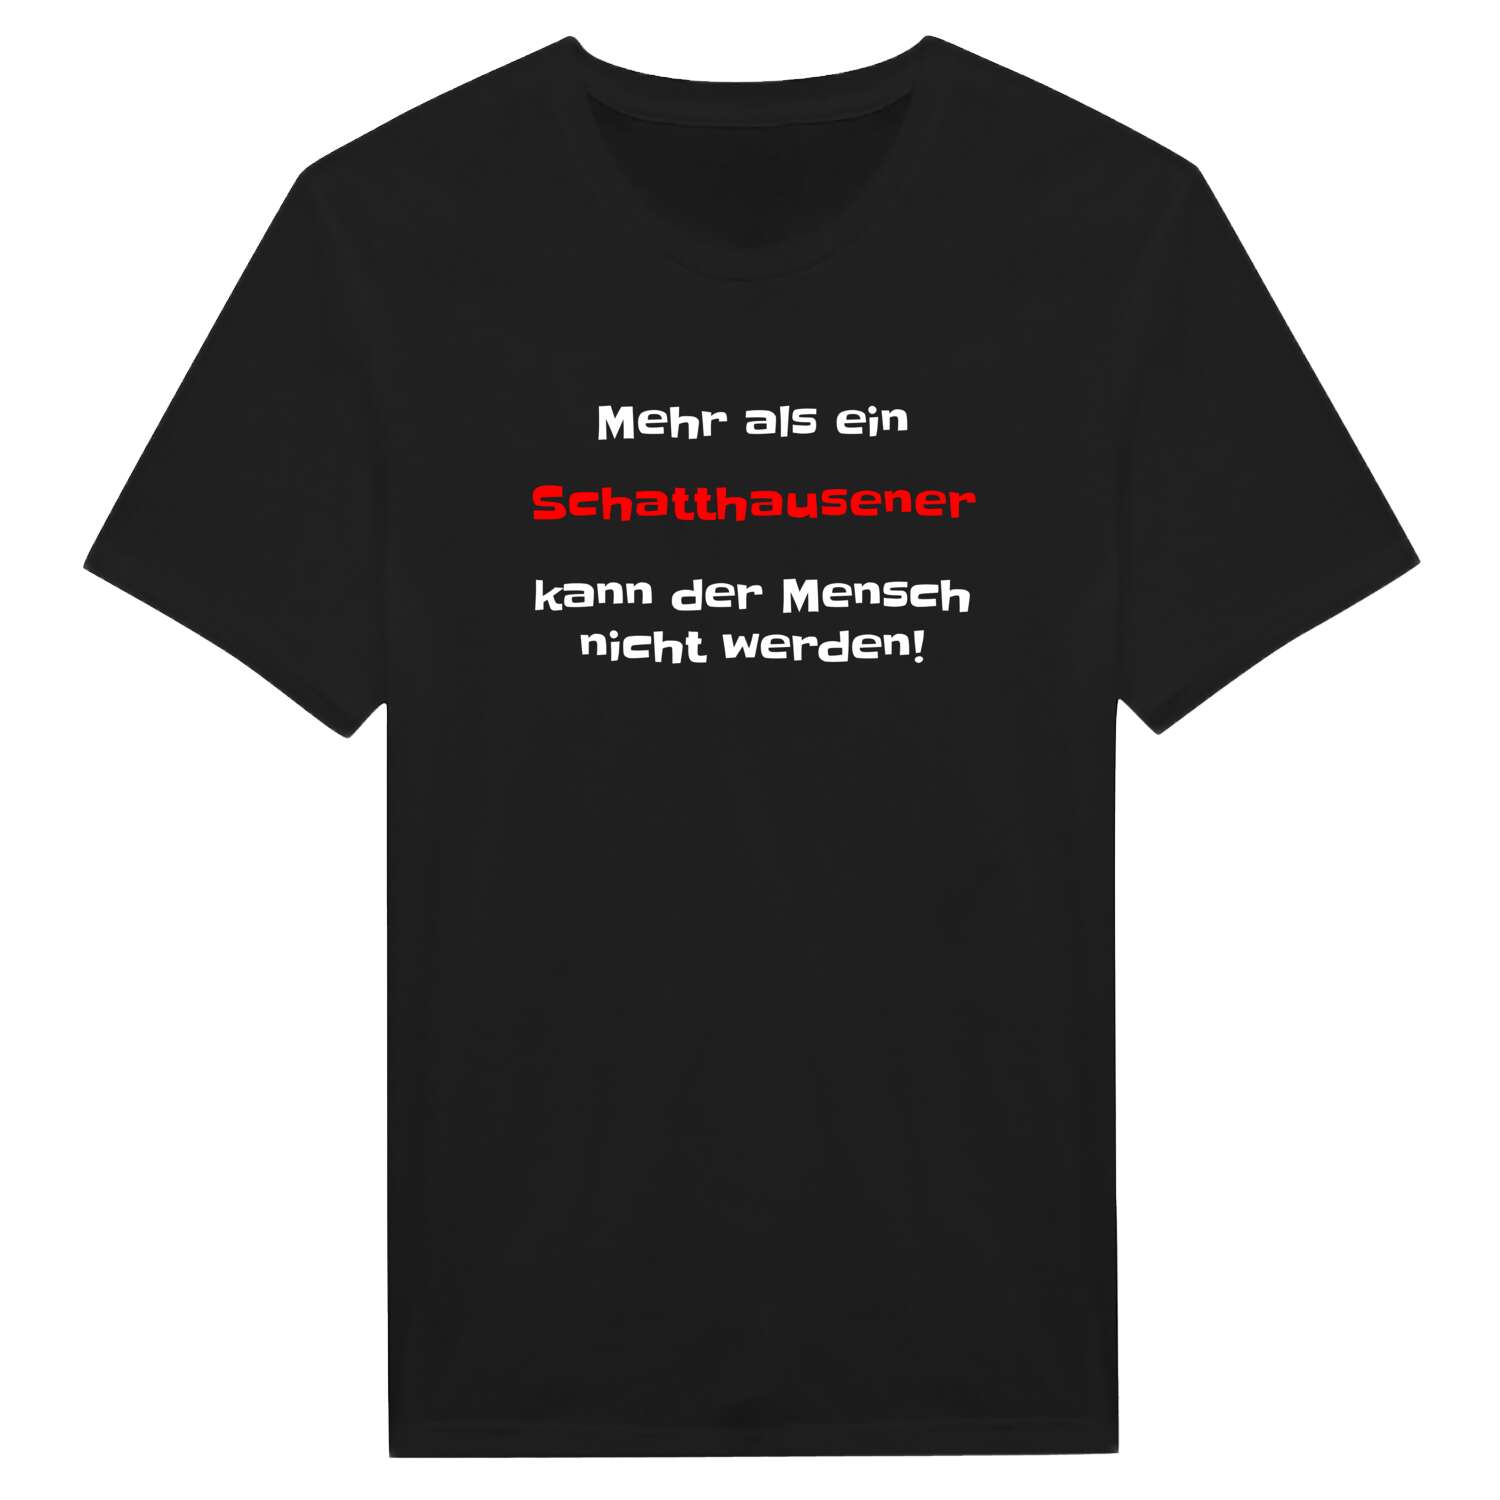 Schatthausen T-Shirt »Mehr als ein«